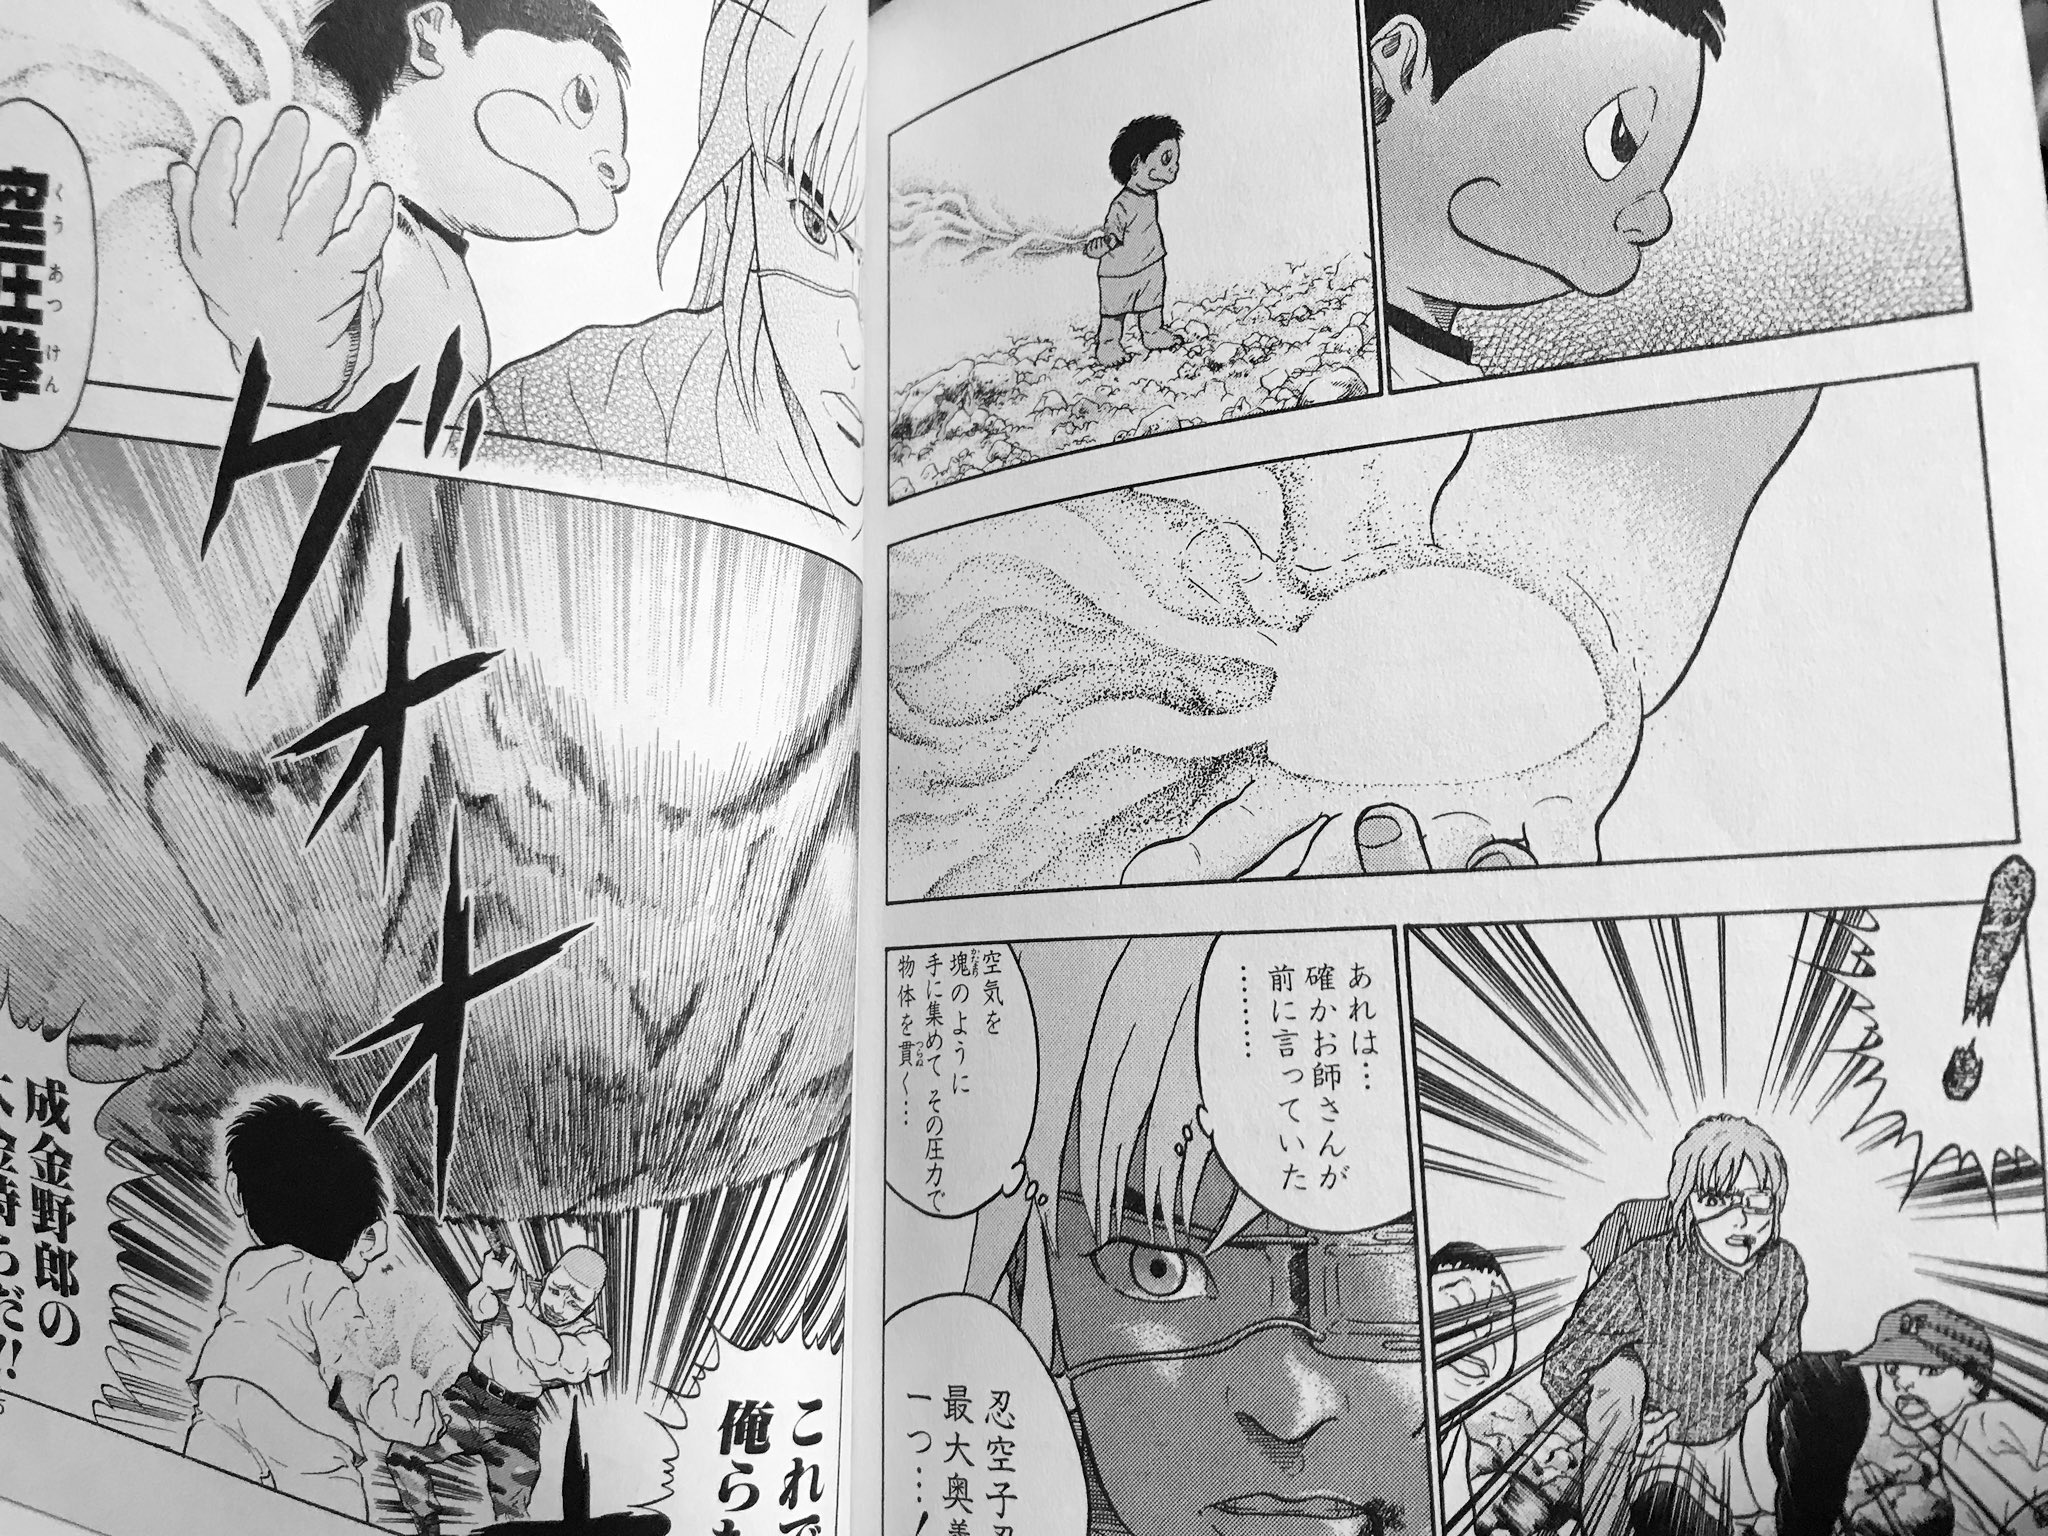 𝗰𝗵𝗶𝘆𝘂 Naruto Boruto 忍空 数年ぶりに読んでる 忍術etc 空 圧拳っての螺旋丸にﾁｮｯﾄ似てるんだなコレ 岸本先生は忍空に影響を受け Naruto を描いたとか 違ってたらｺﾞﾒﾝﾅｻｲ 忍空読んでから Narutoにハマった やぱ忍空面白い T Co